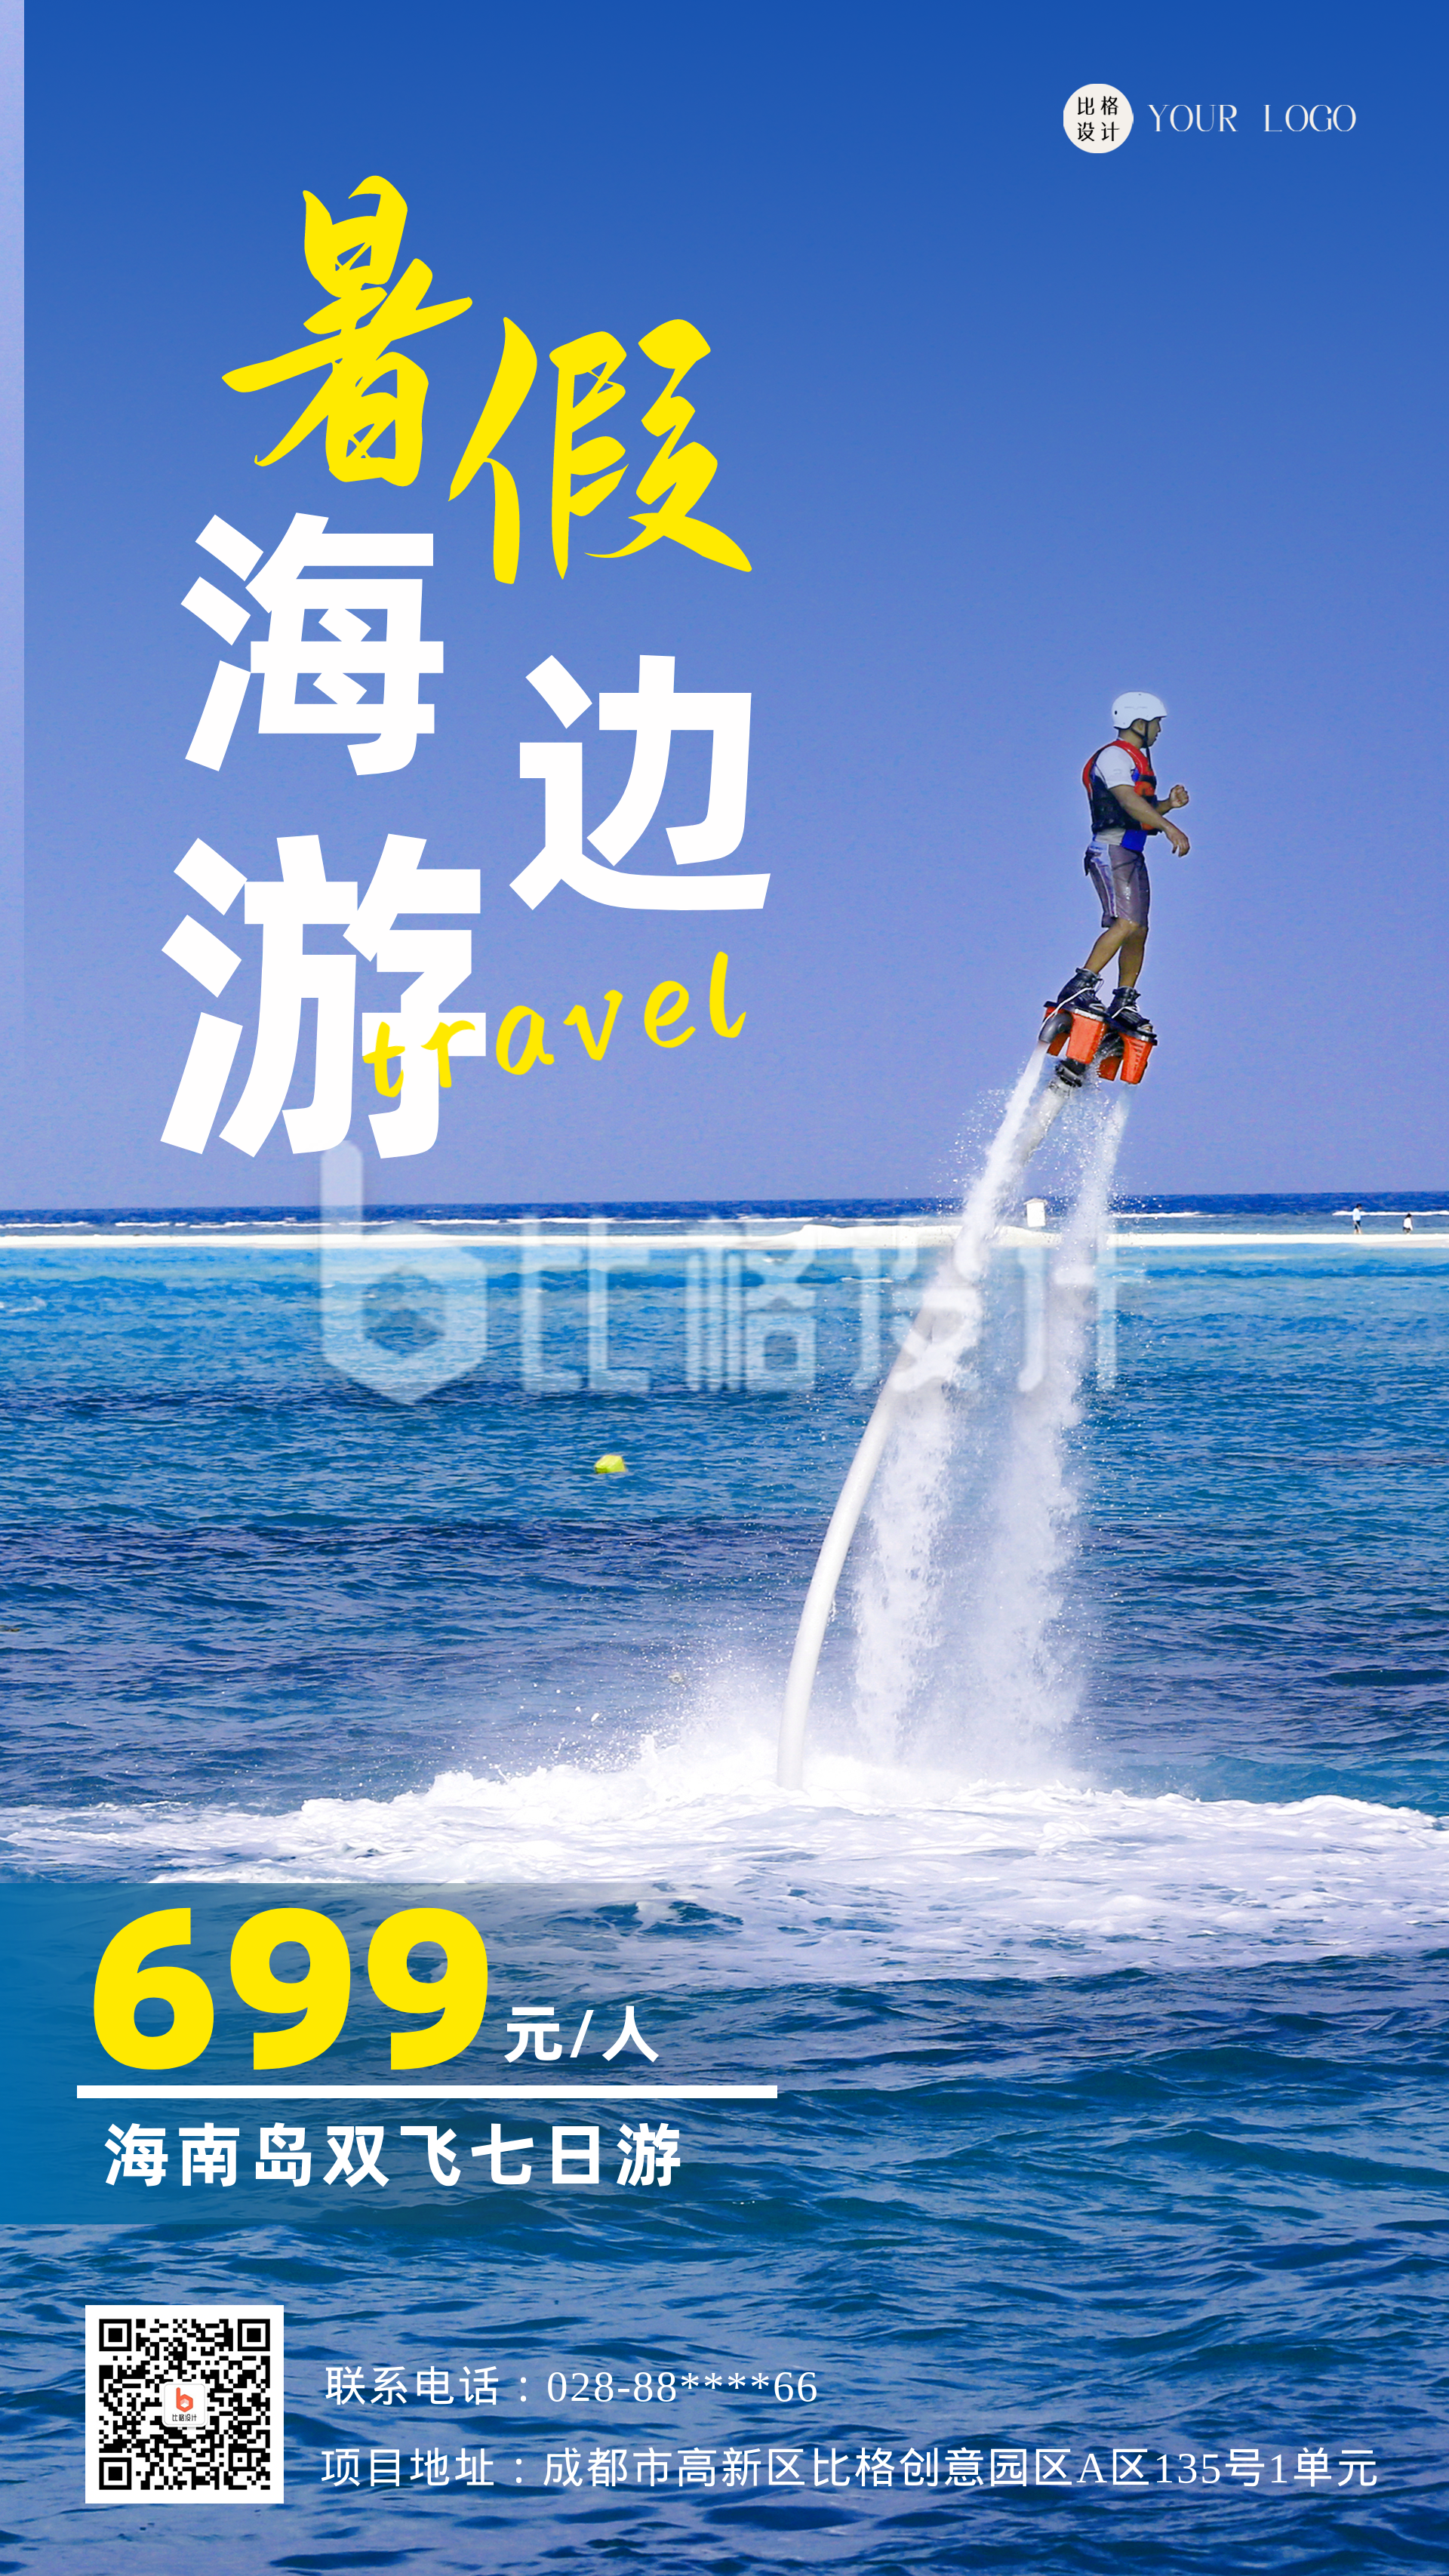 蓝色实景简约风大海海南岛旅行宣传手机海报